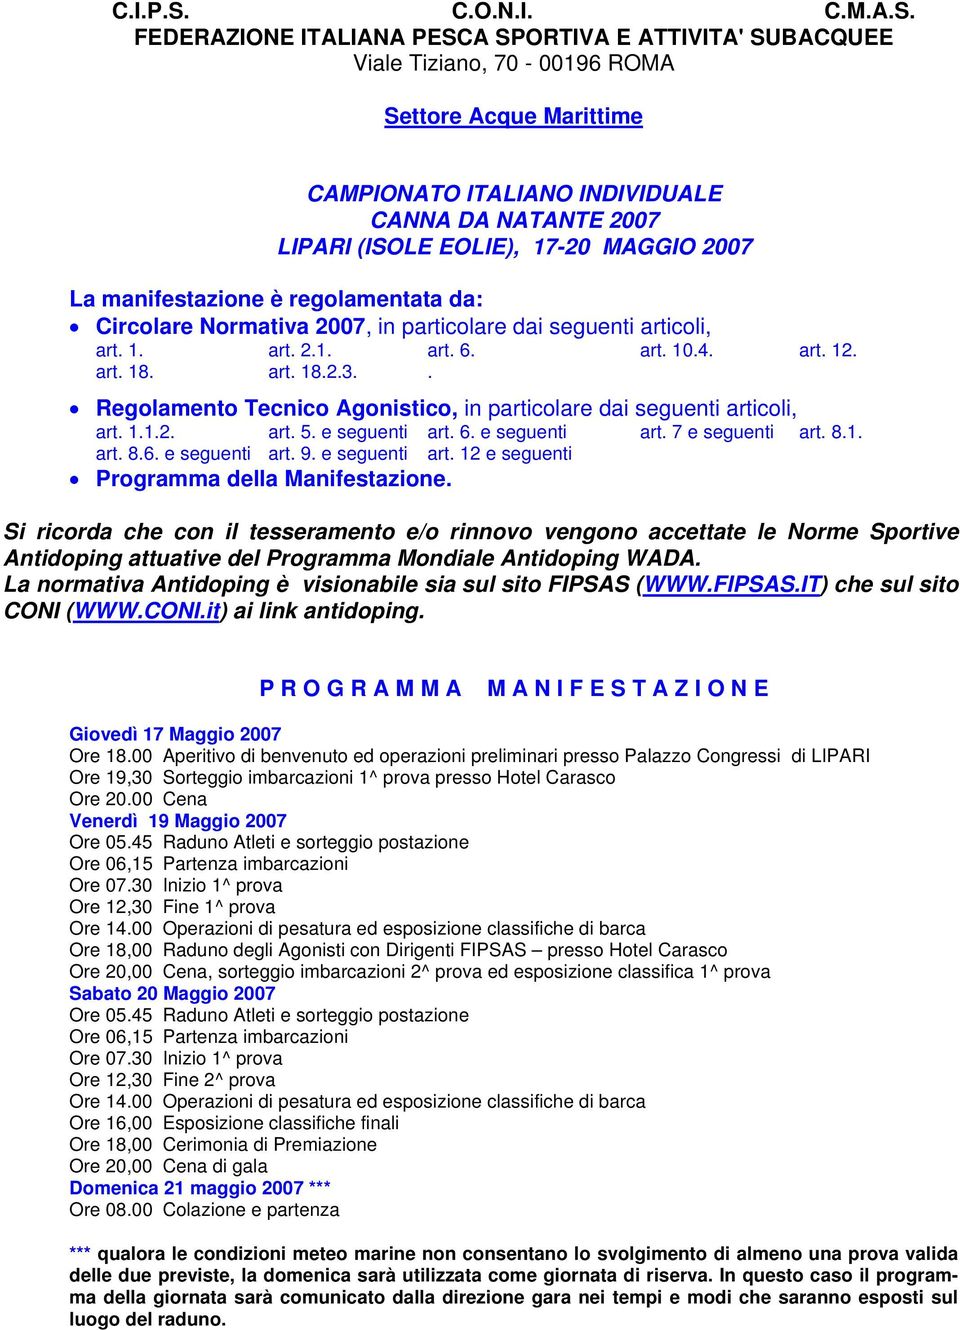 FEDERAZIONE ITALIANA PESCA SPORTIVA E ATTIVITA' SUBACQUEE Viale Tiziano, 70-00196 ROMA Settore Acque Marittime CAMPIONATO ITALIANO INDIVIDUALE CANNA DA NATANTE 2007 LIPARI (ISOLE EOLIE), 17-20 MAGGIO